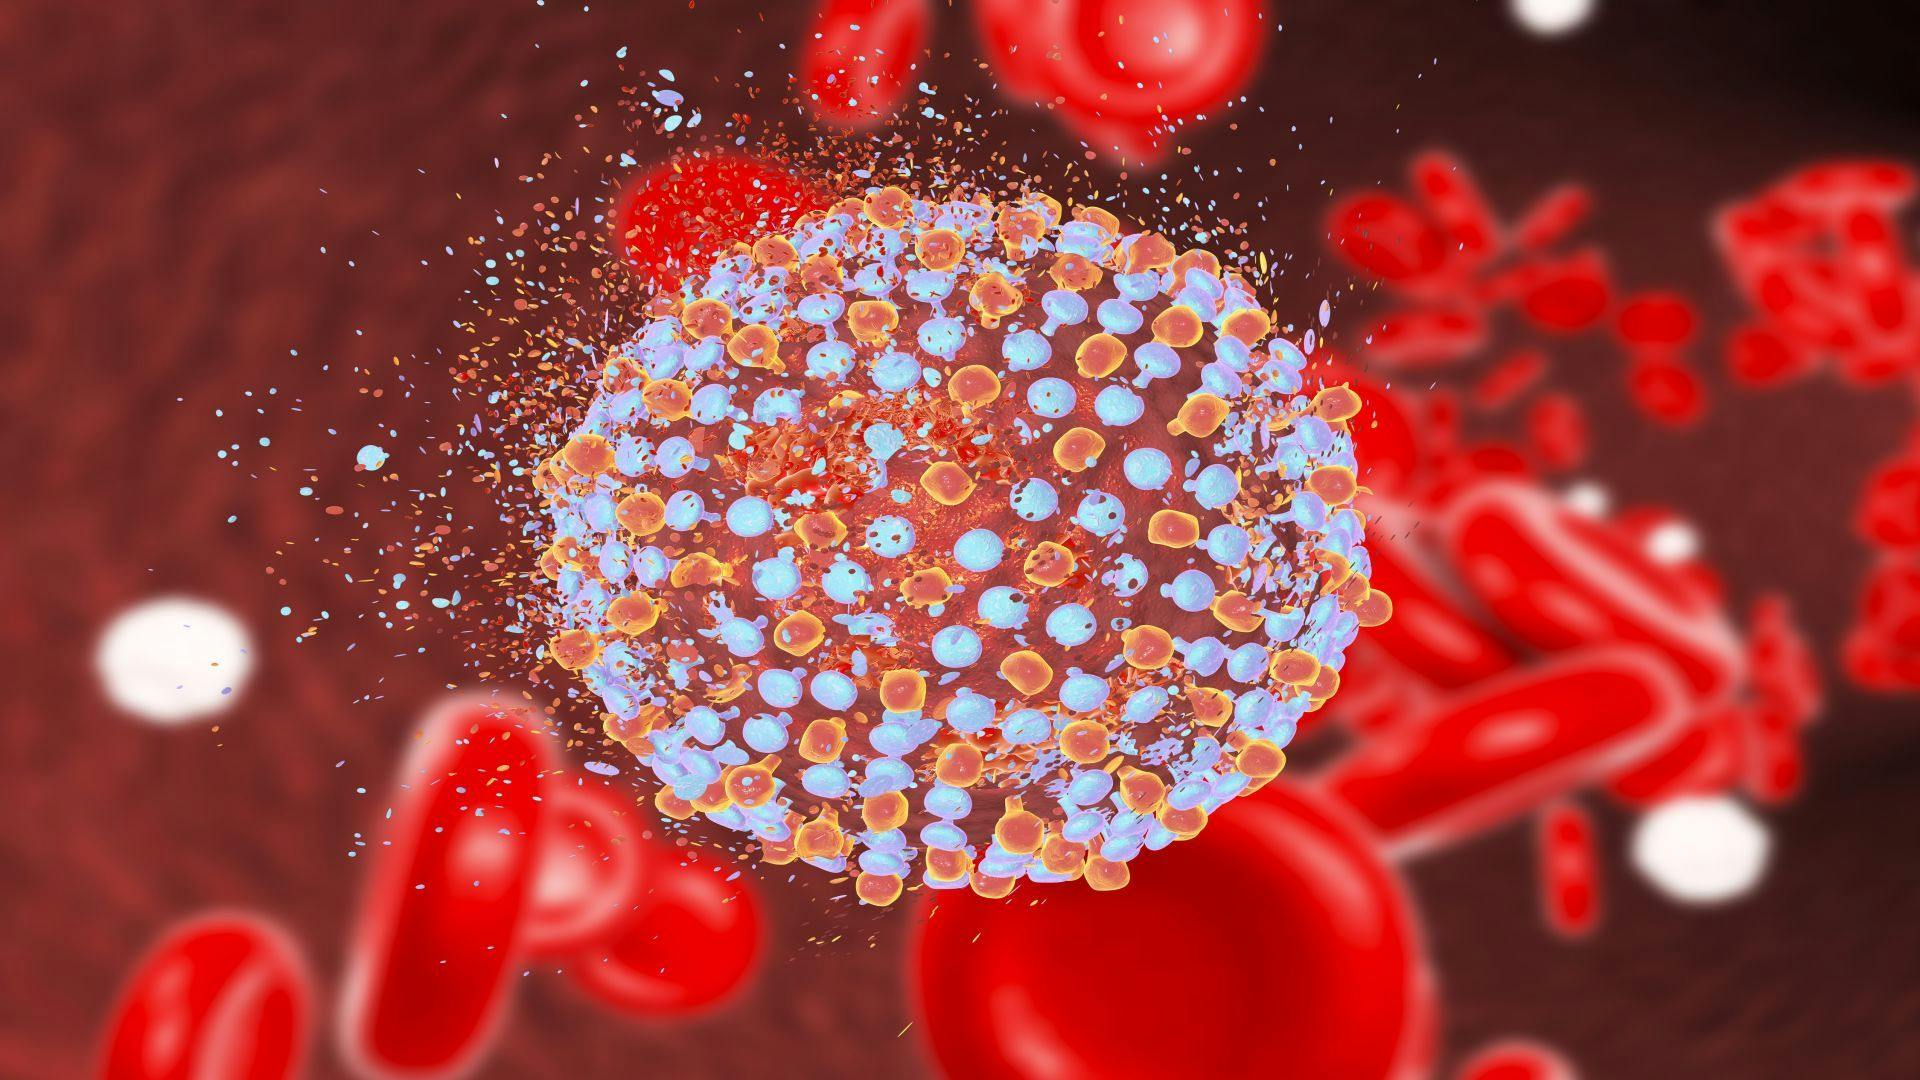 FDA Approves Vosevi for Hepatitis C